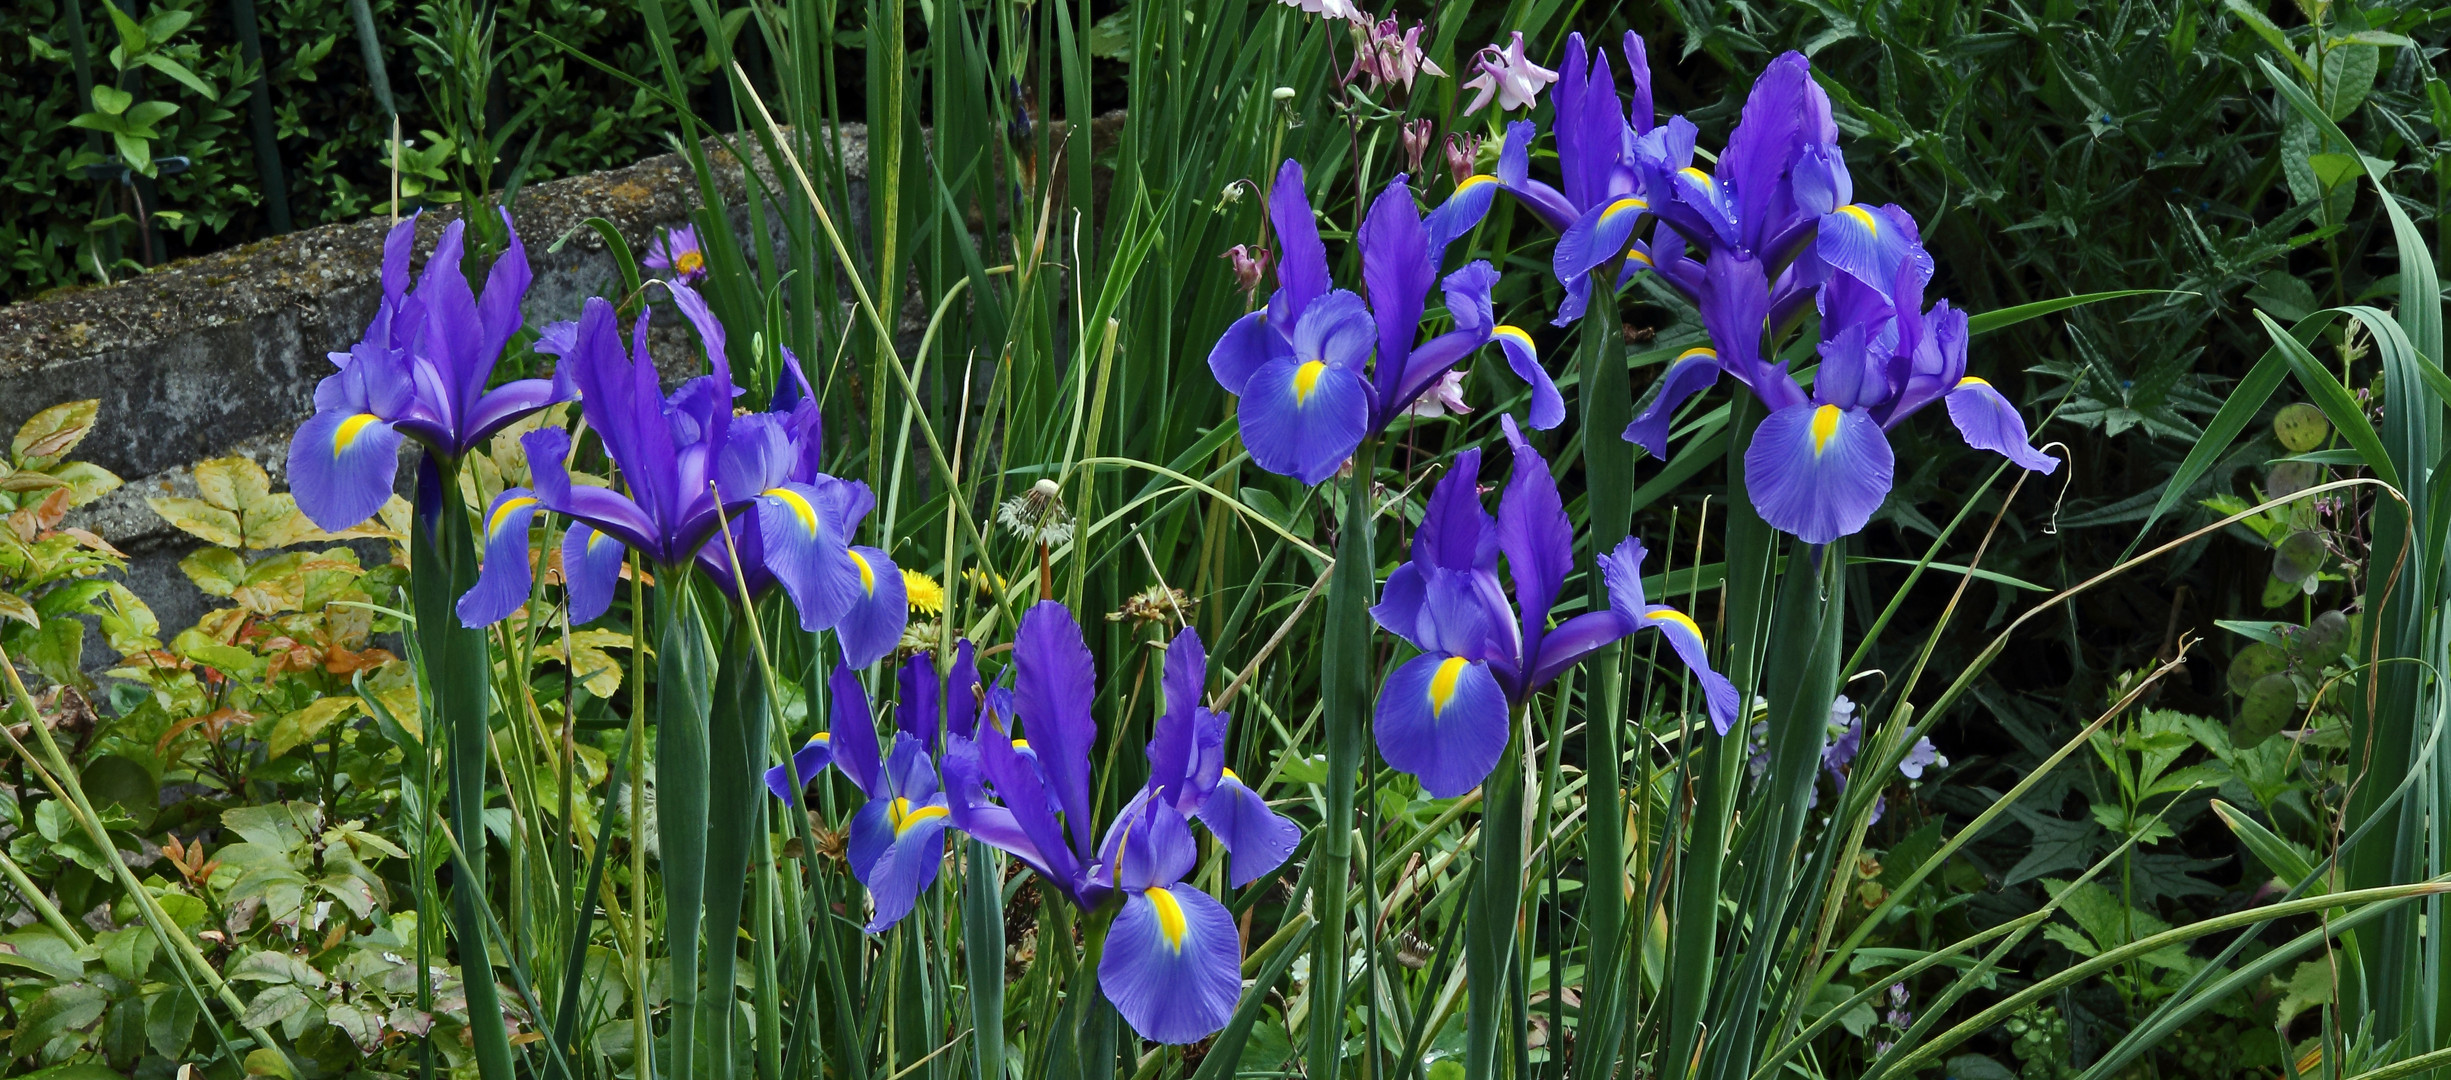 Die blauen Iris sind jedes Jahr ein Pracht in meinen Augen...